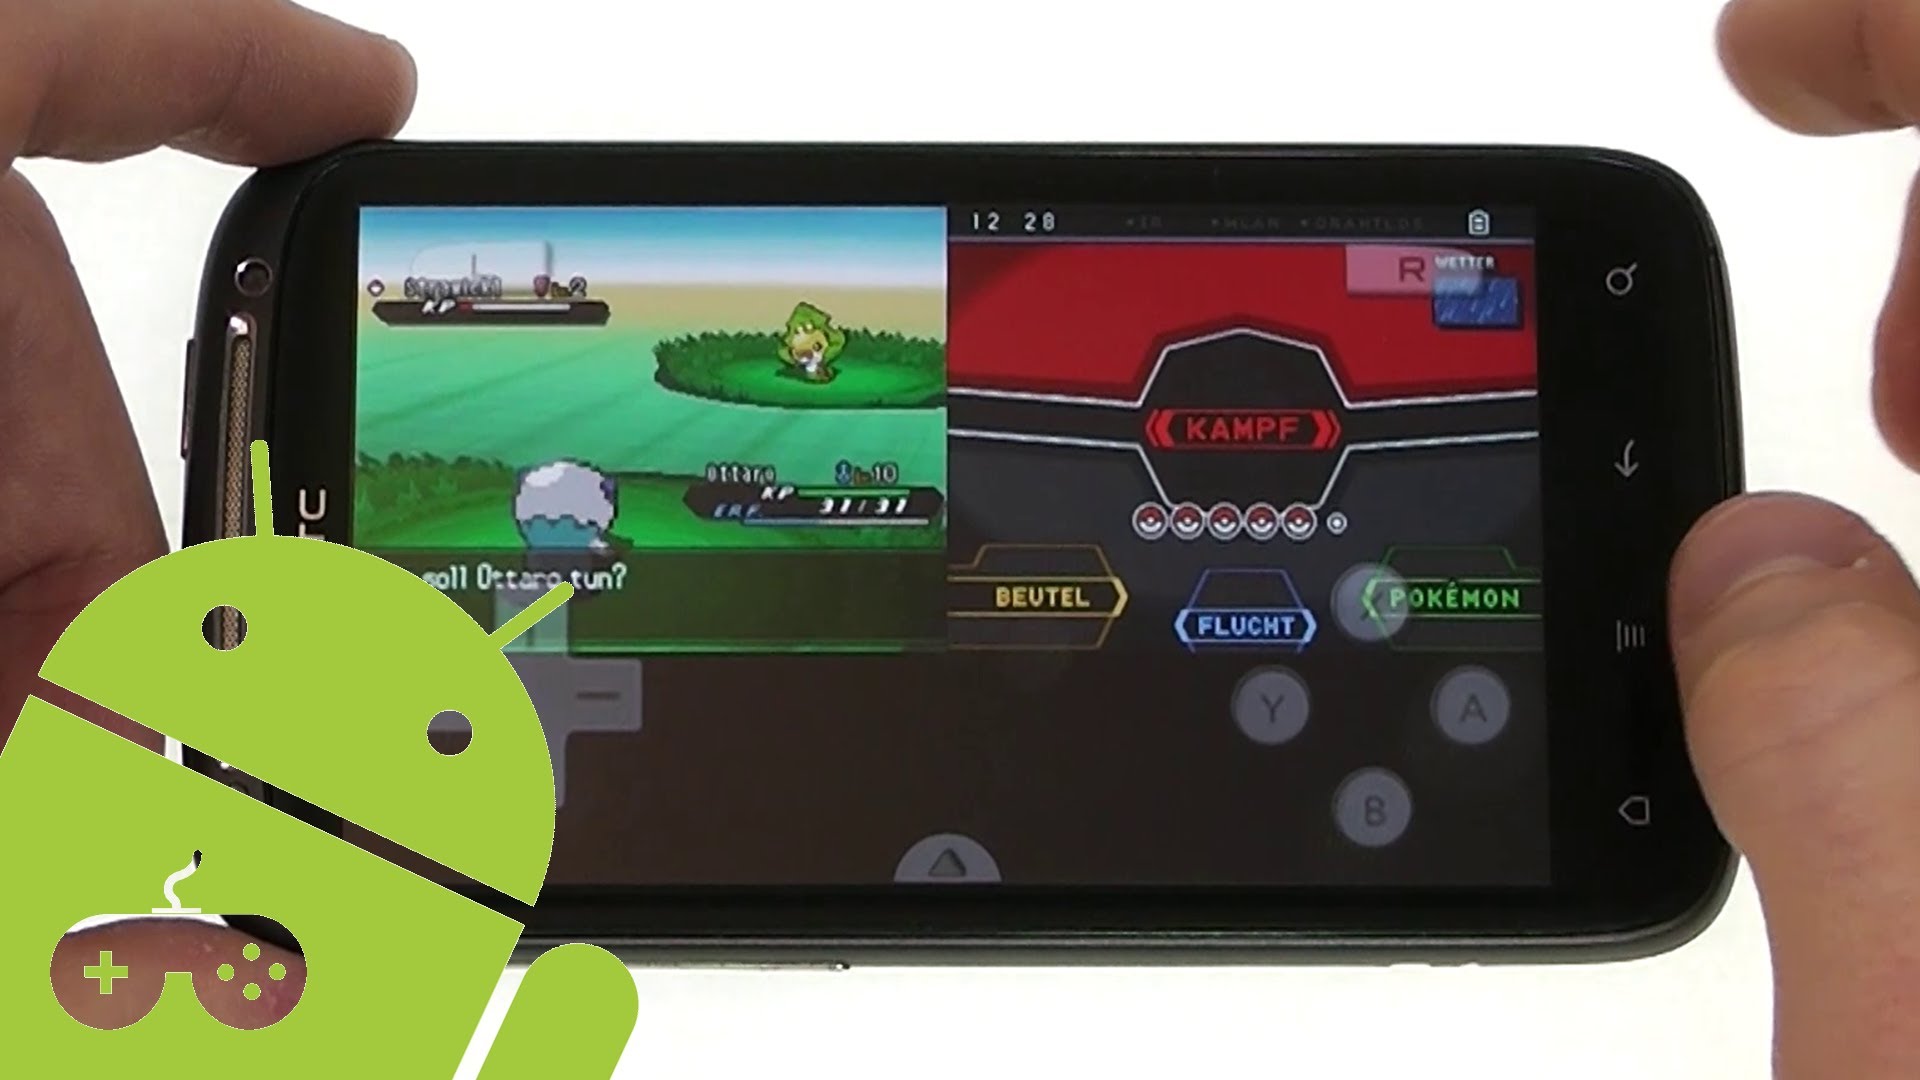 Suyu emulator android. Nintendo 2ds Emulator Android. Эмулятор Нинтендо Nintendo. Эмулятор Nintendo 3ds. Эмулятор Nintendo 3ds на андроид.